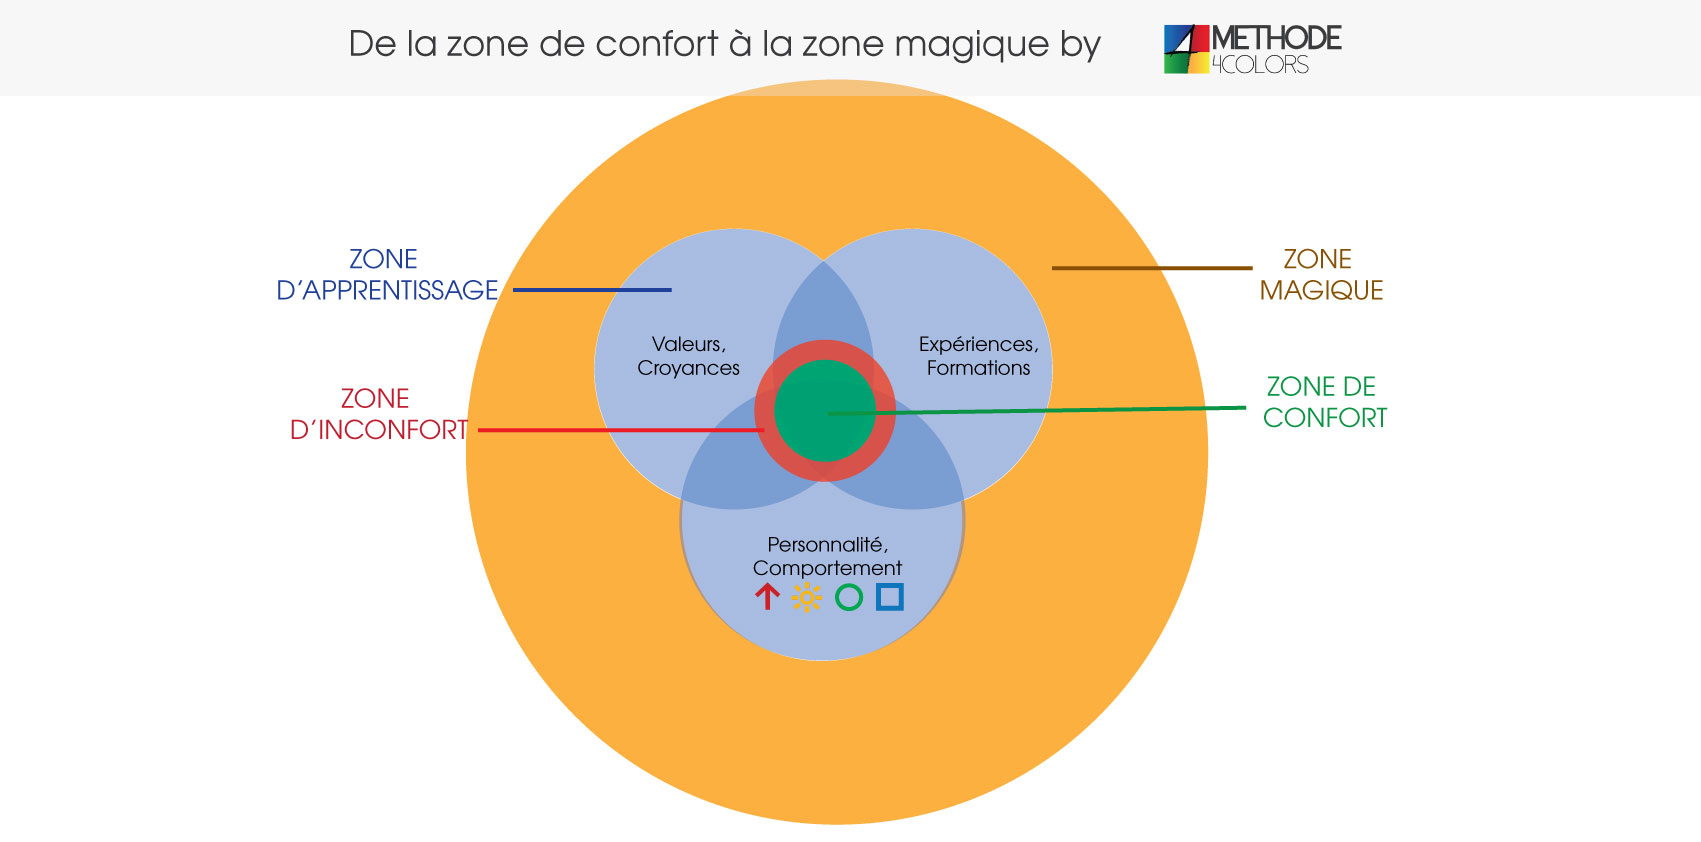 Les différentes zones confort, apprentissage, inconfort et zone magique